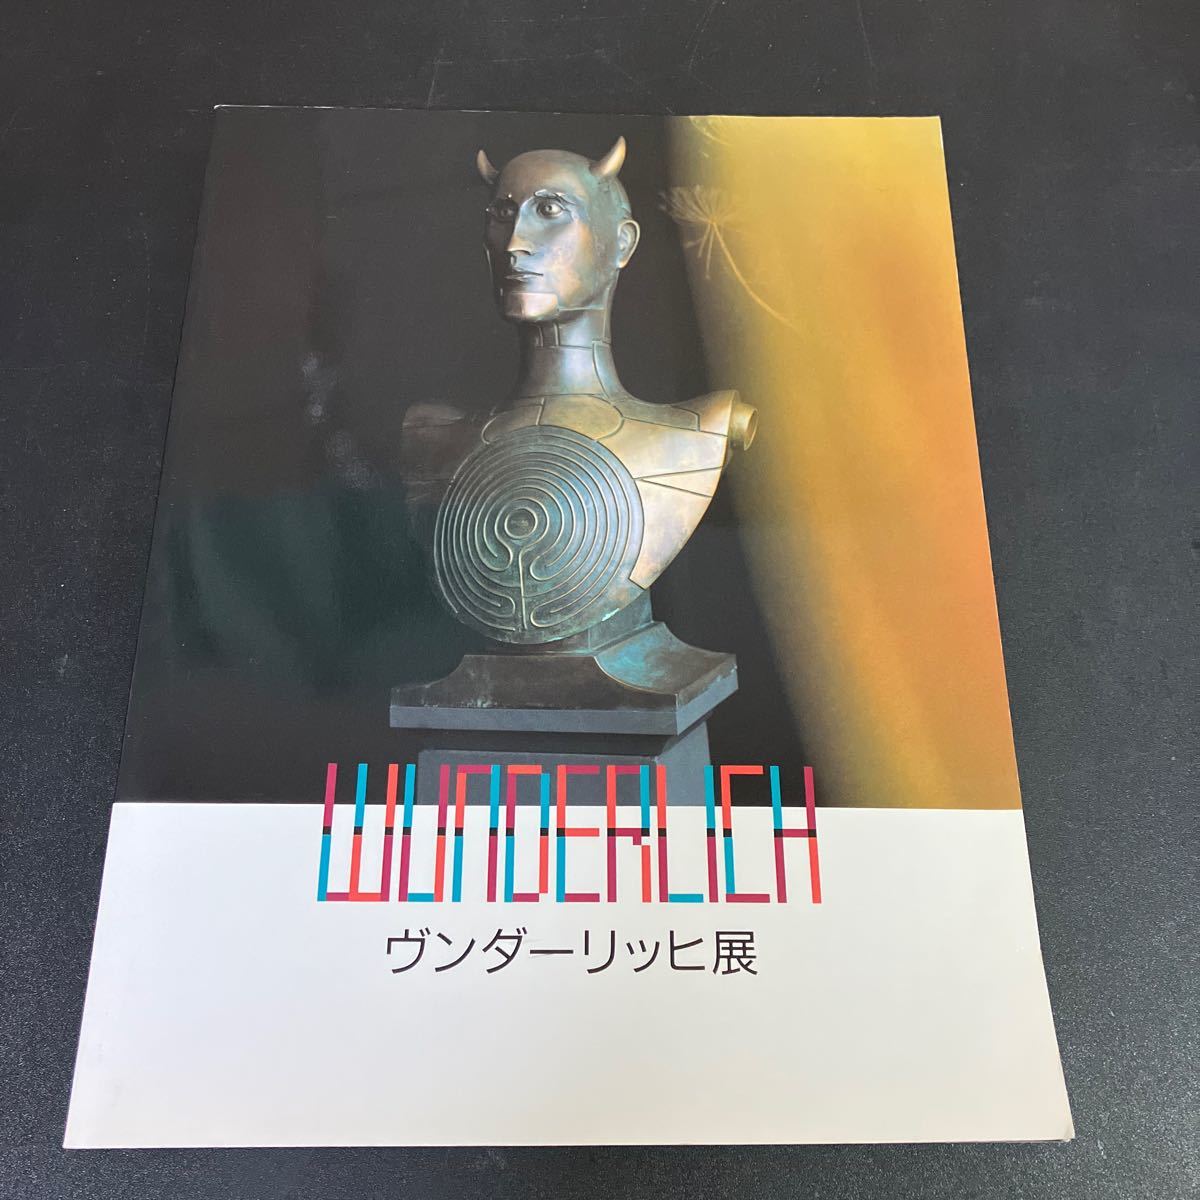 24-1-16 Catalogue de l'exposition Wunderlich 1995 Peintre d'art fantastique Paul Wunderlich, Peinture, Livre d'art, Collection, Livre d'art